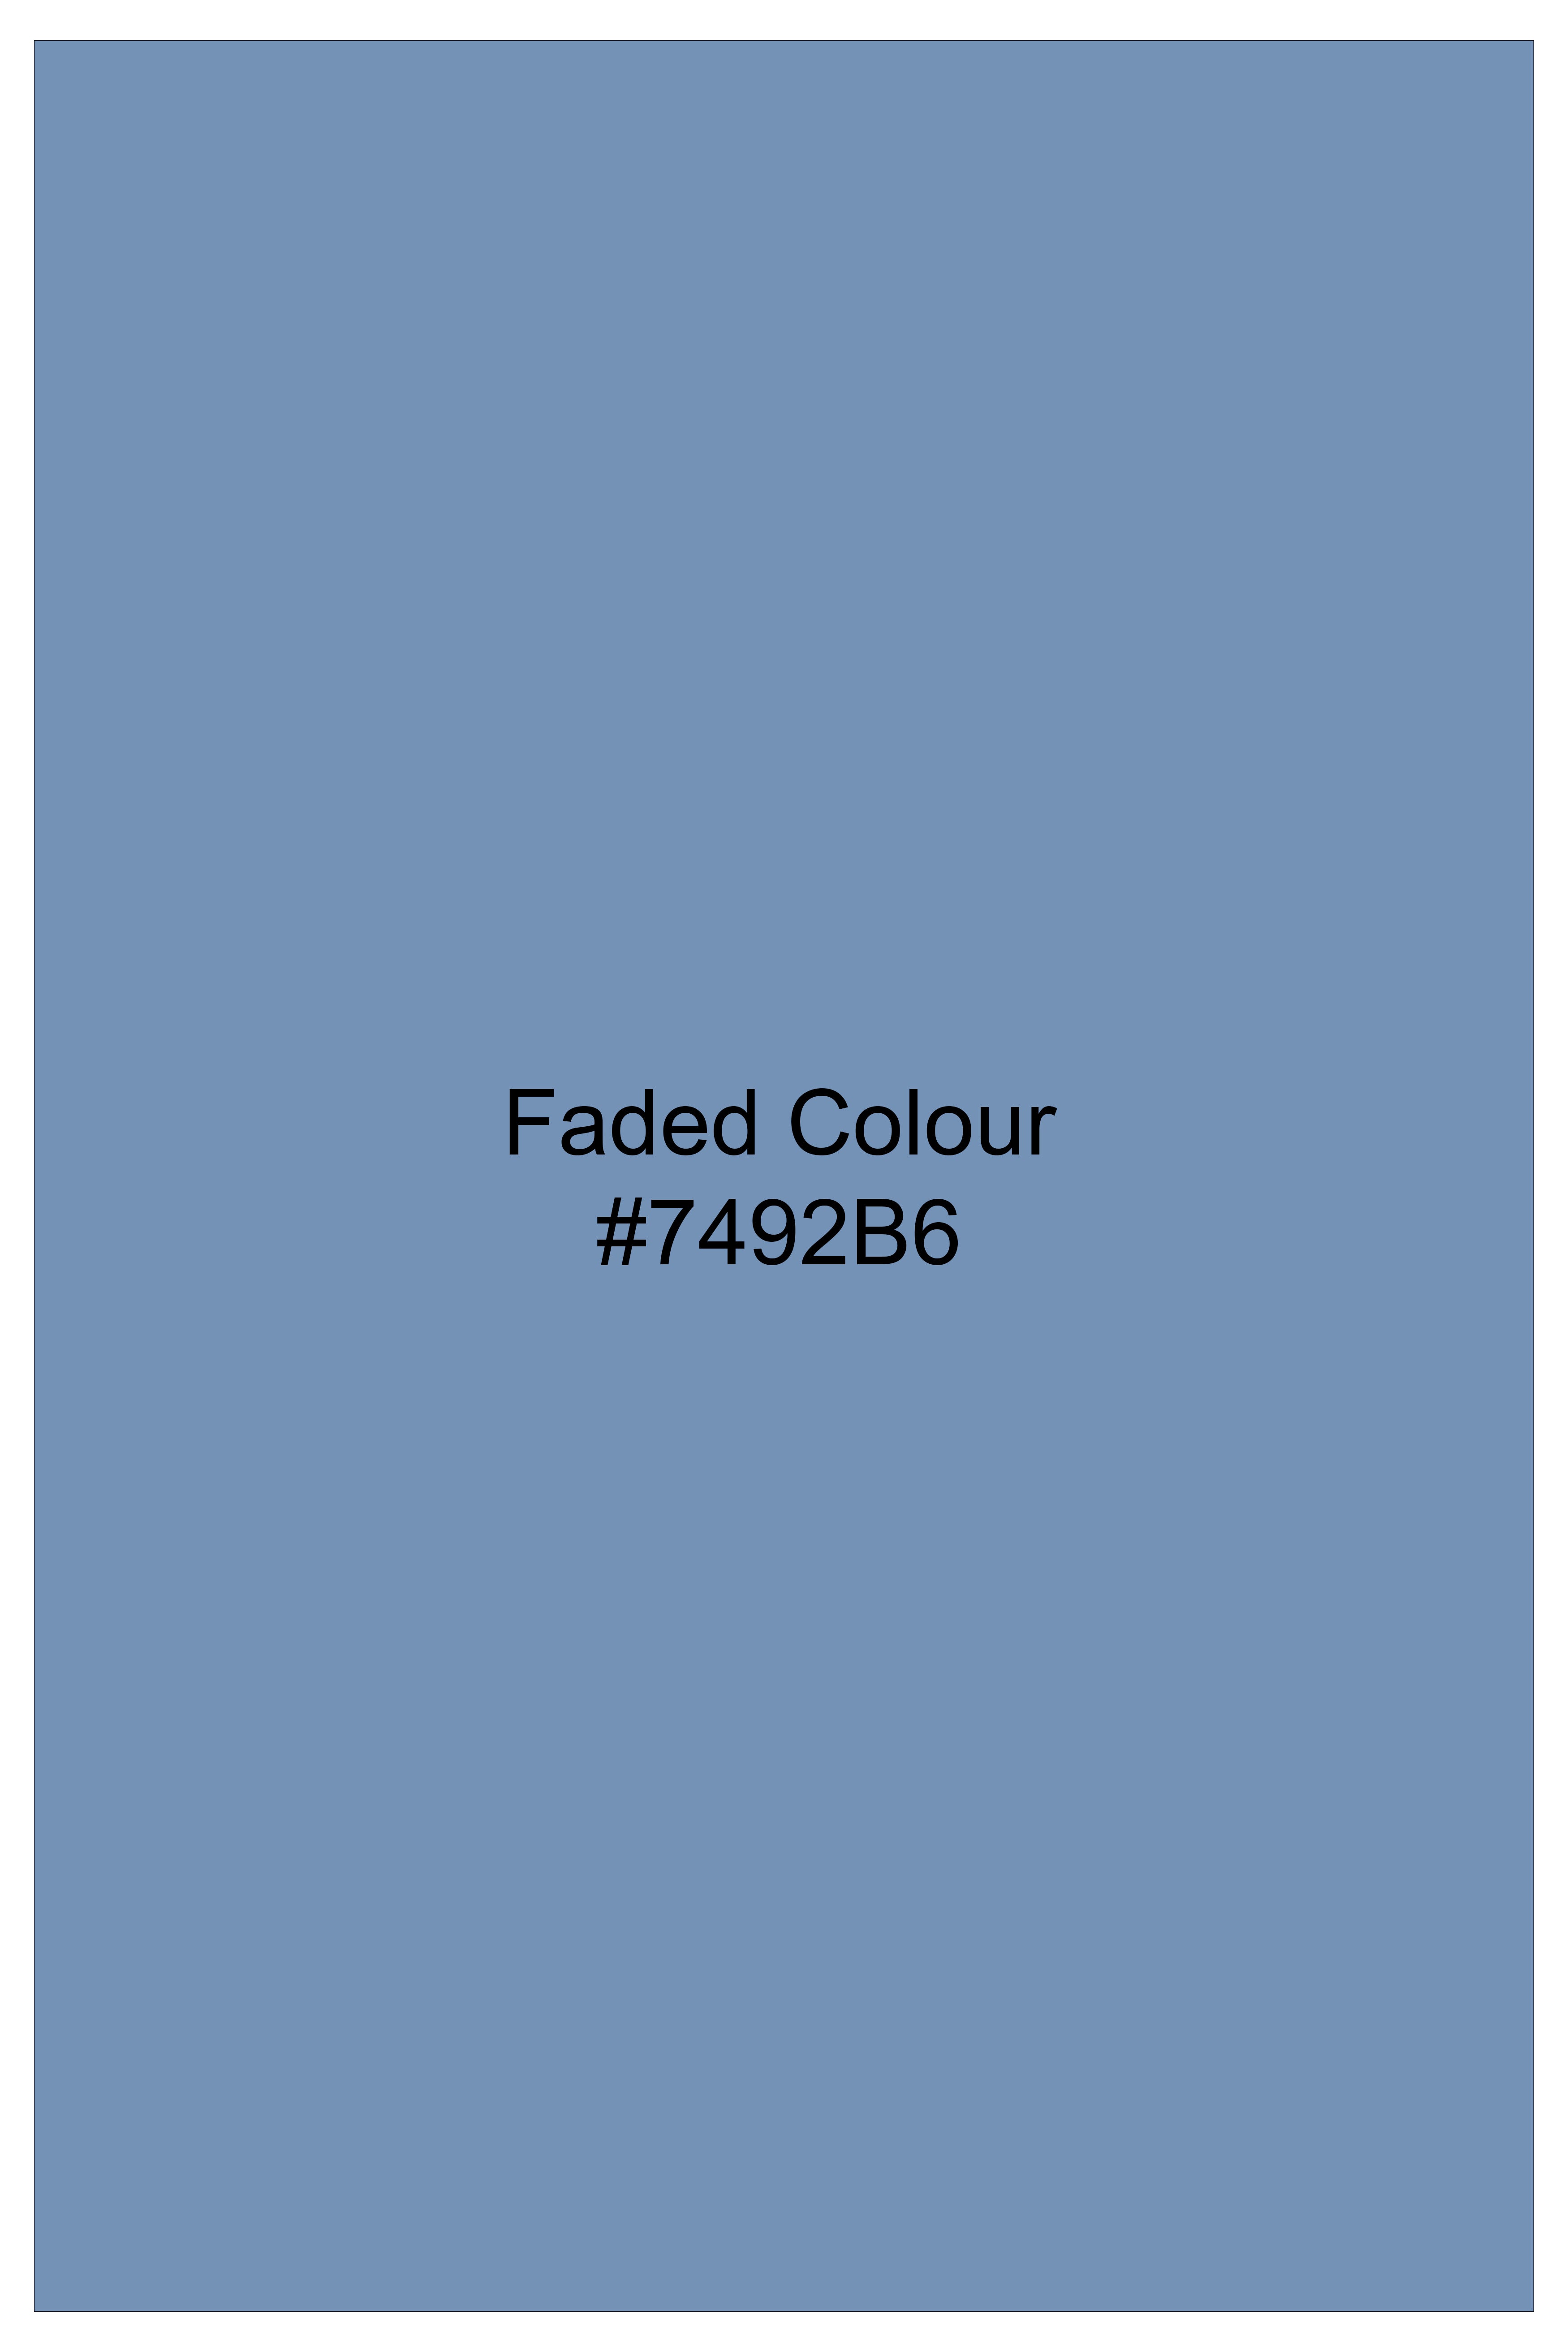 Faded Blue Print Subtle Sheen Super Soft Premium Cotton Shirt